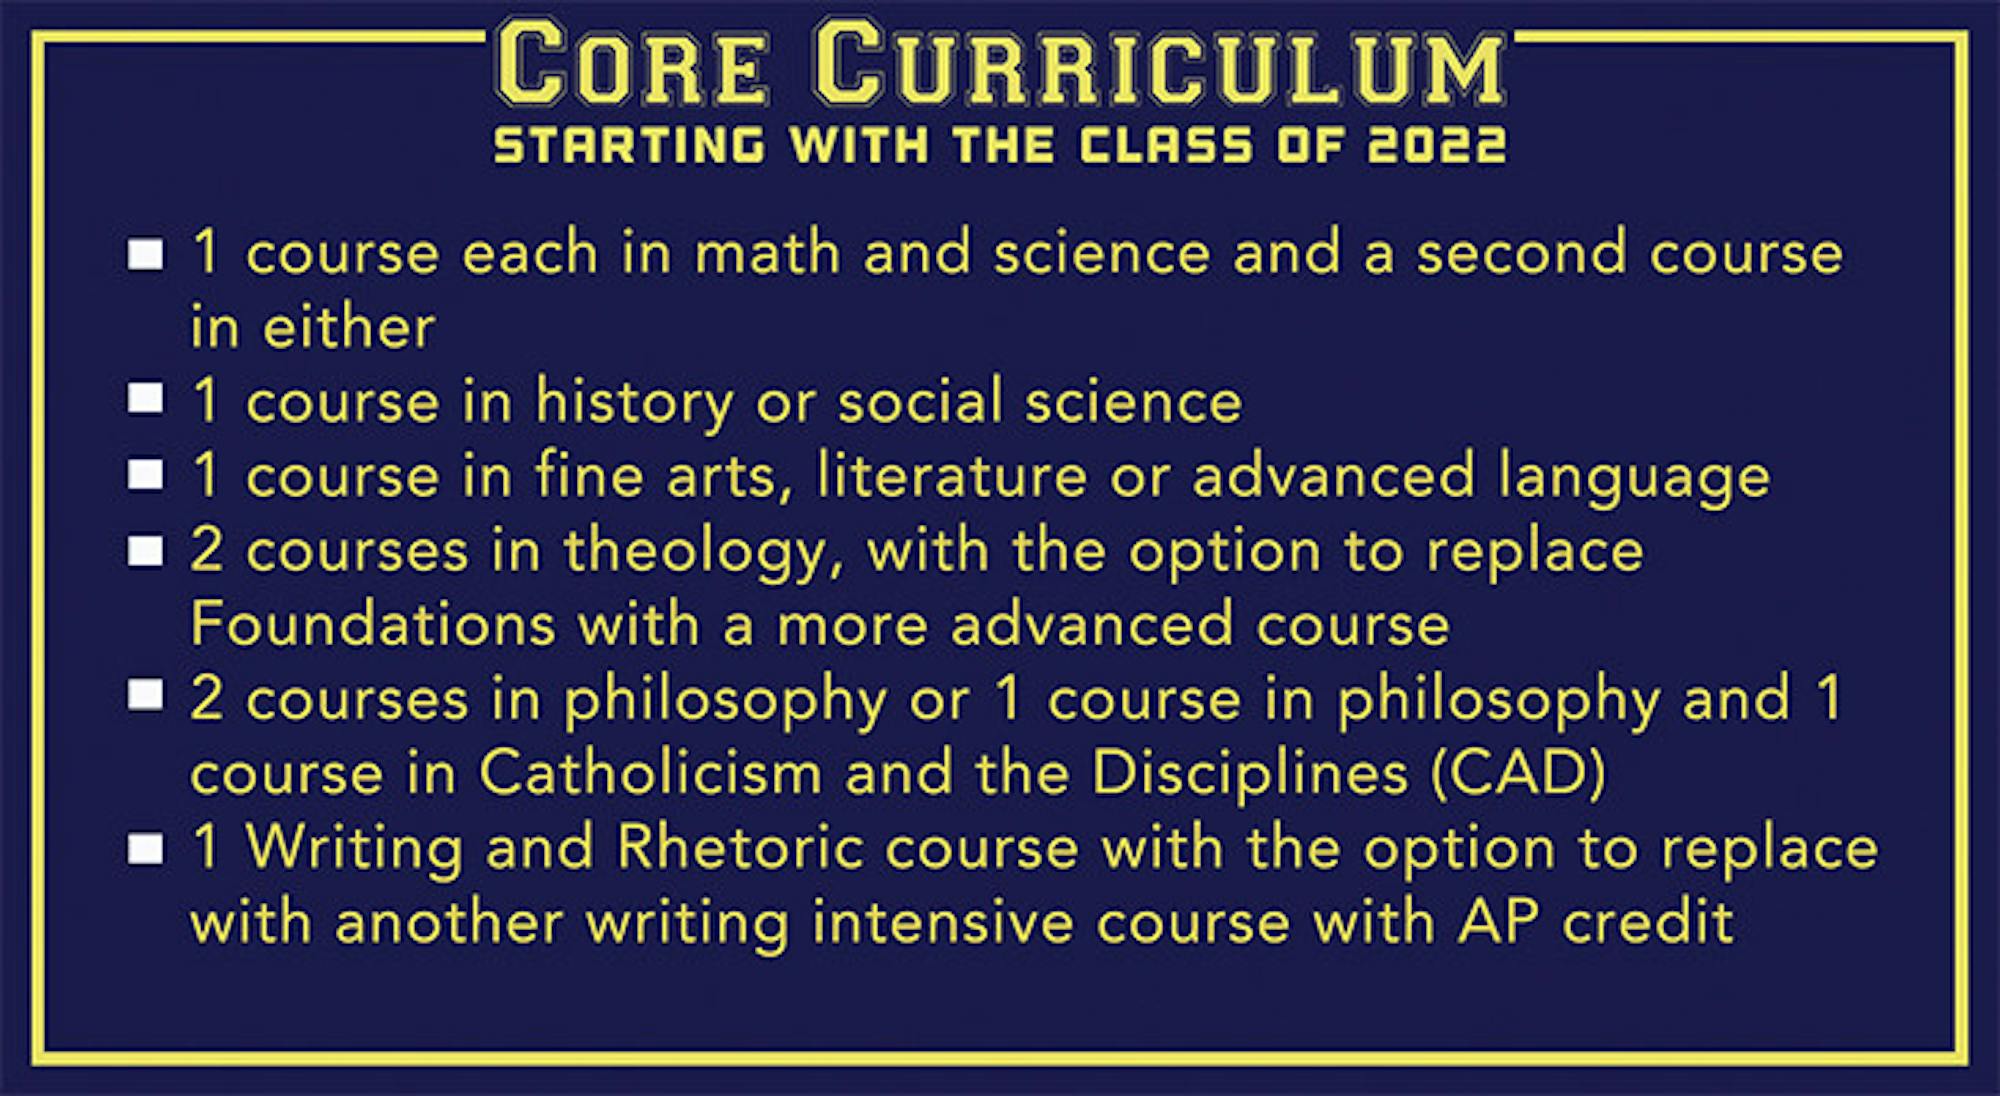 updated curriculum web